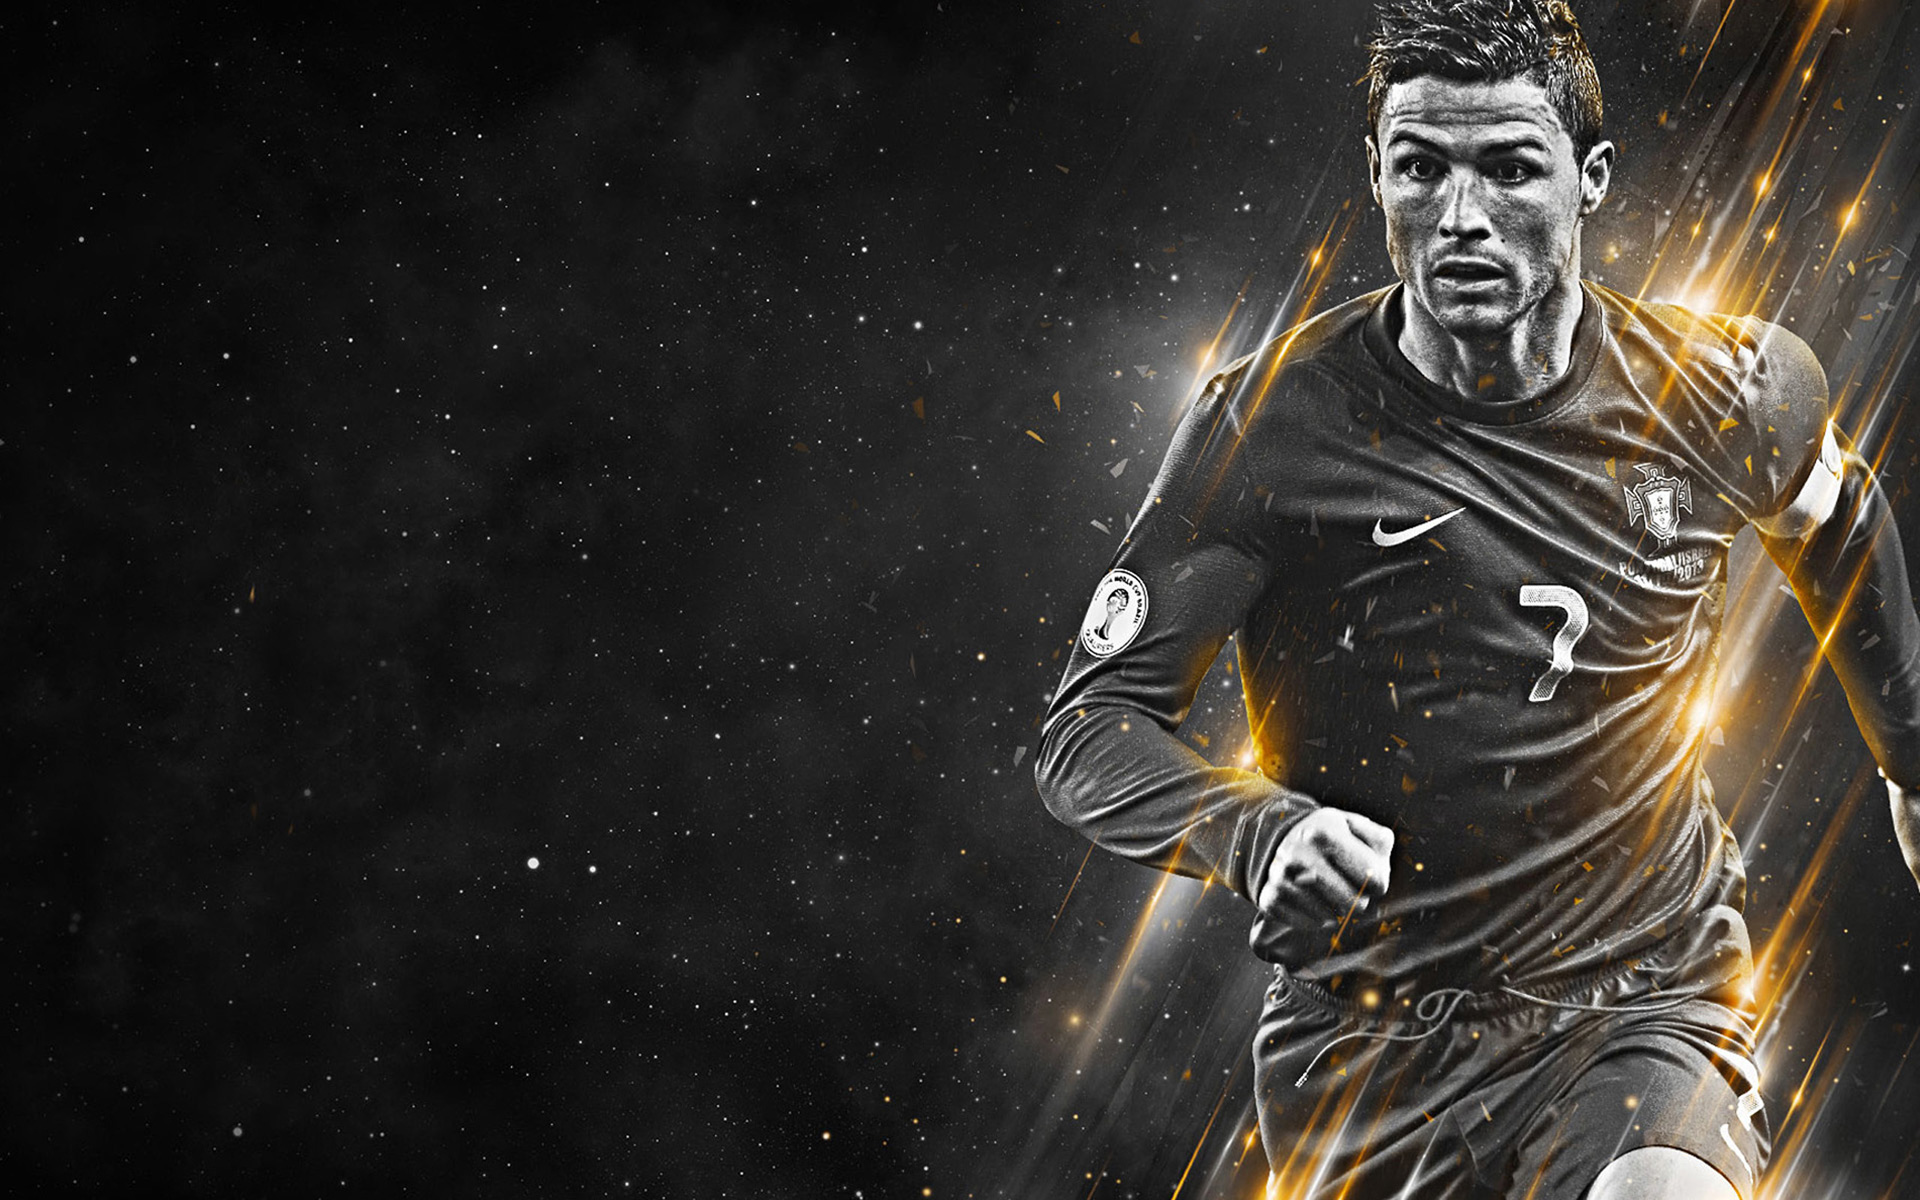 Bộ Hình Nền Siêu Sao Bóng Đá Cristiano Ronaldo - Siêu Imba